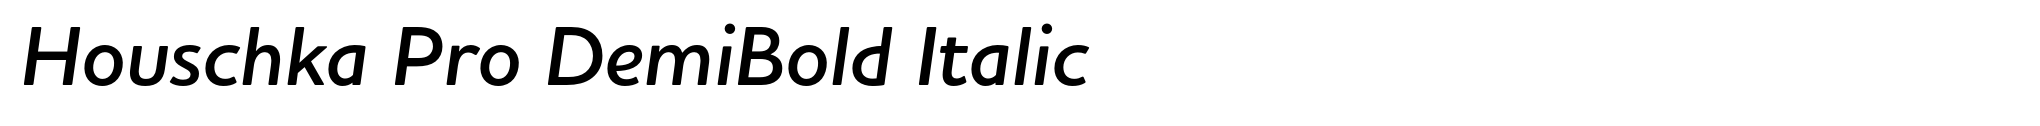 Houschka Pro DemiBold Italic image